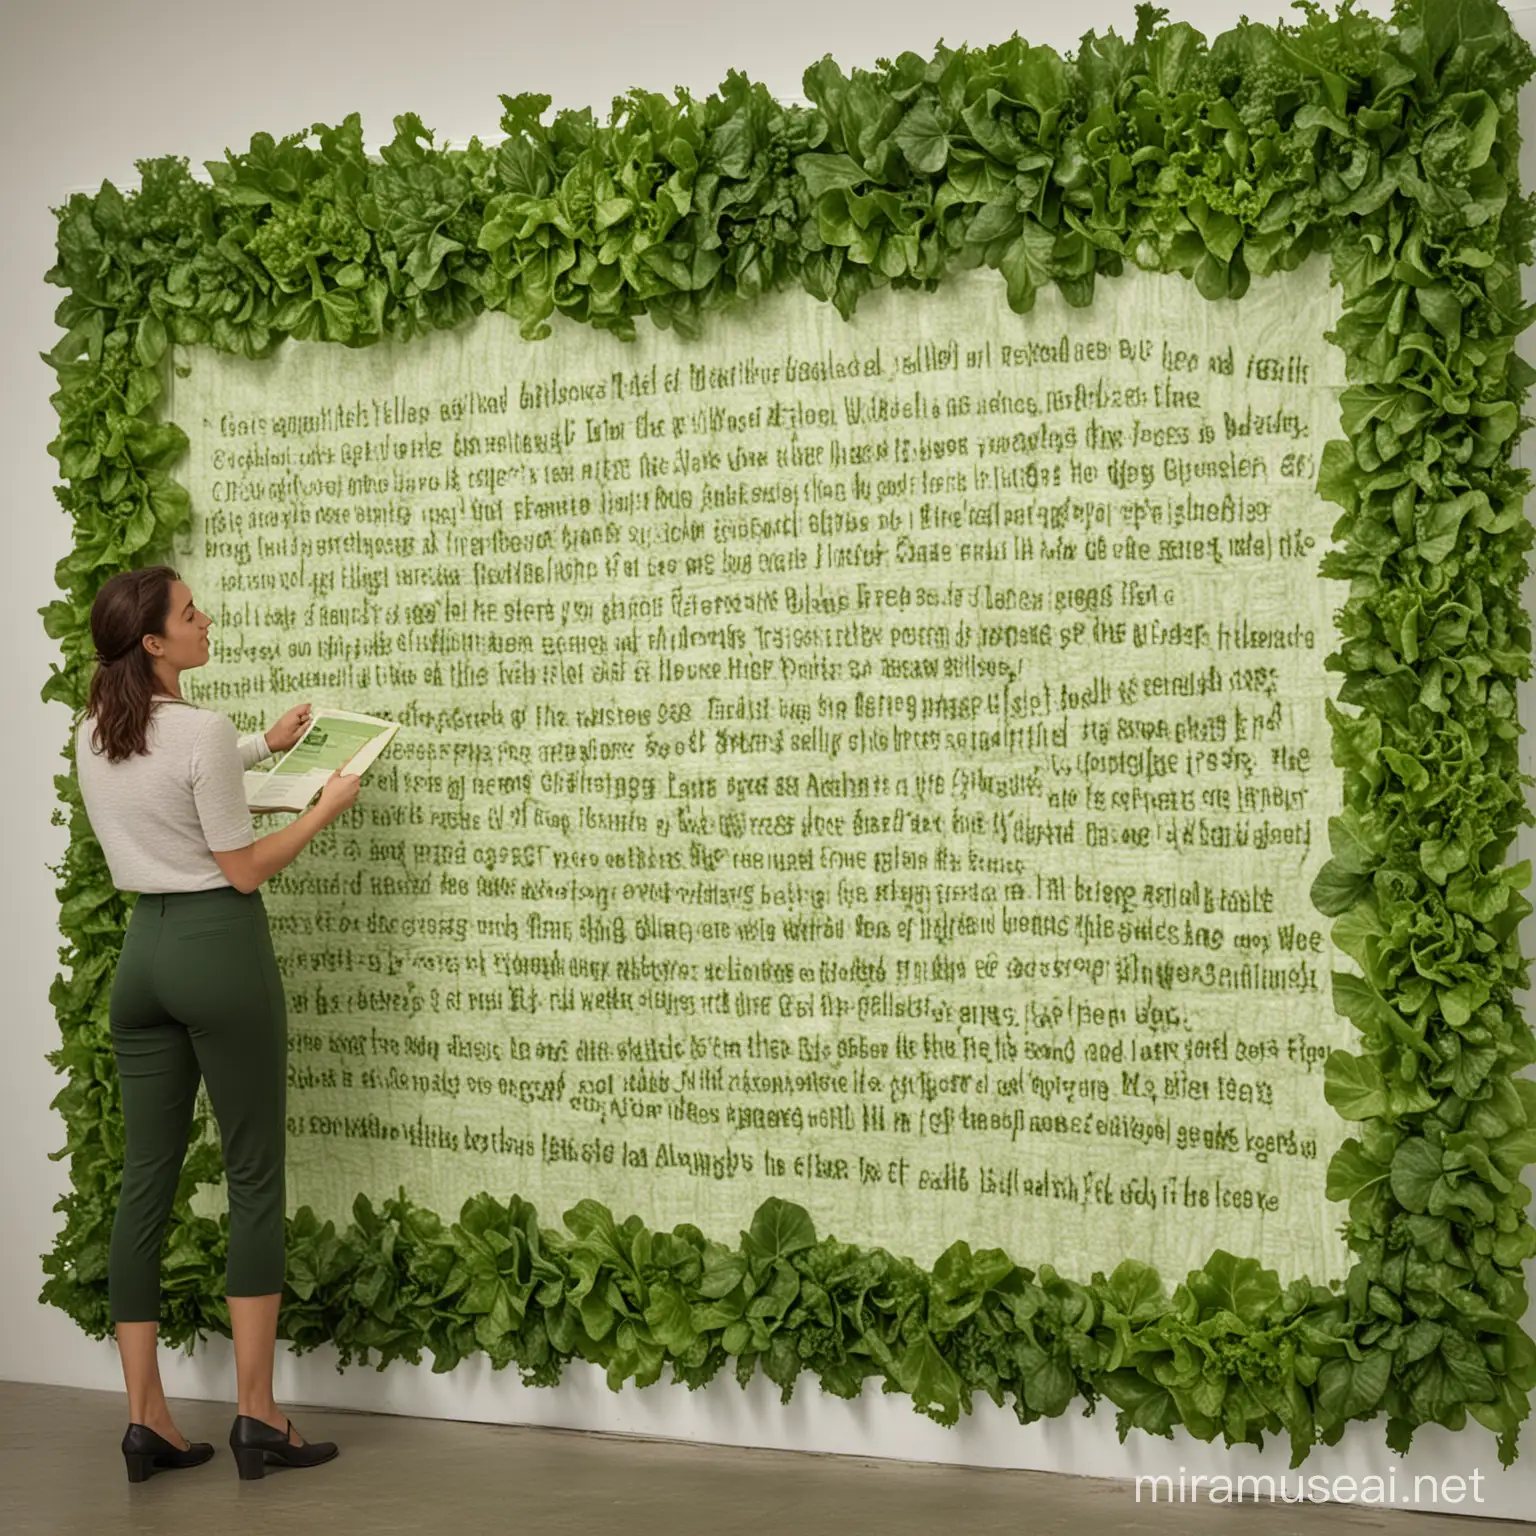 une femme regarde et lit le texte sur un grand tableau. le texte est entièrement constitué de feuilles de salade. la femme est debout et regarde la caméra.